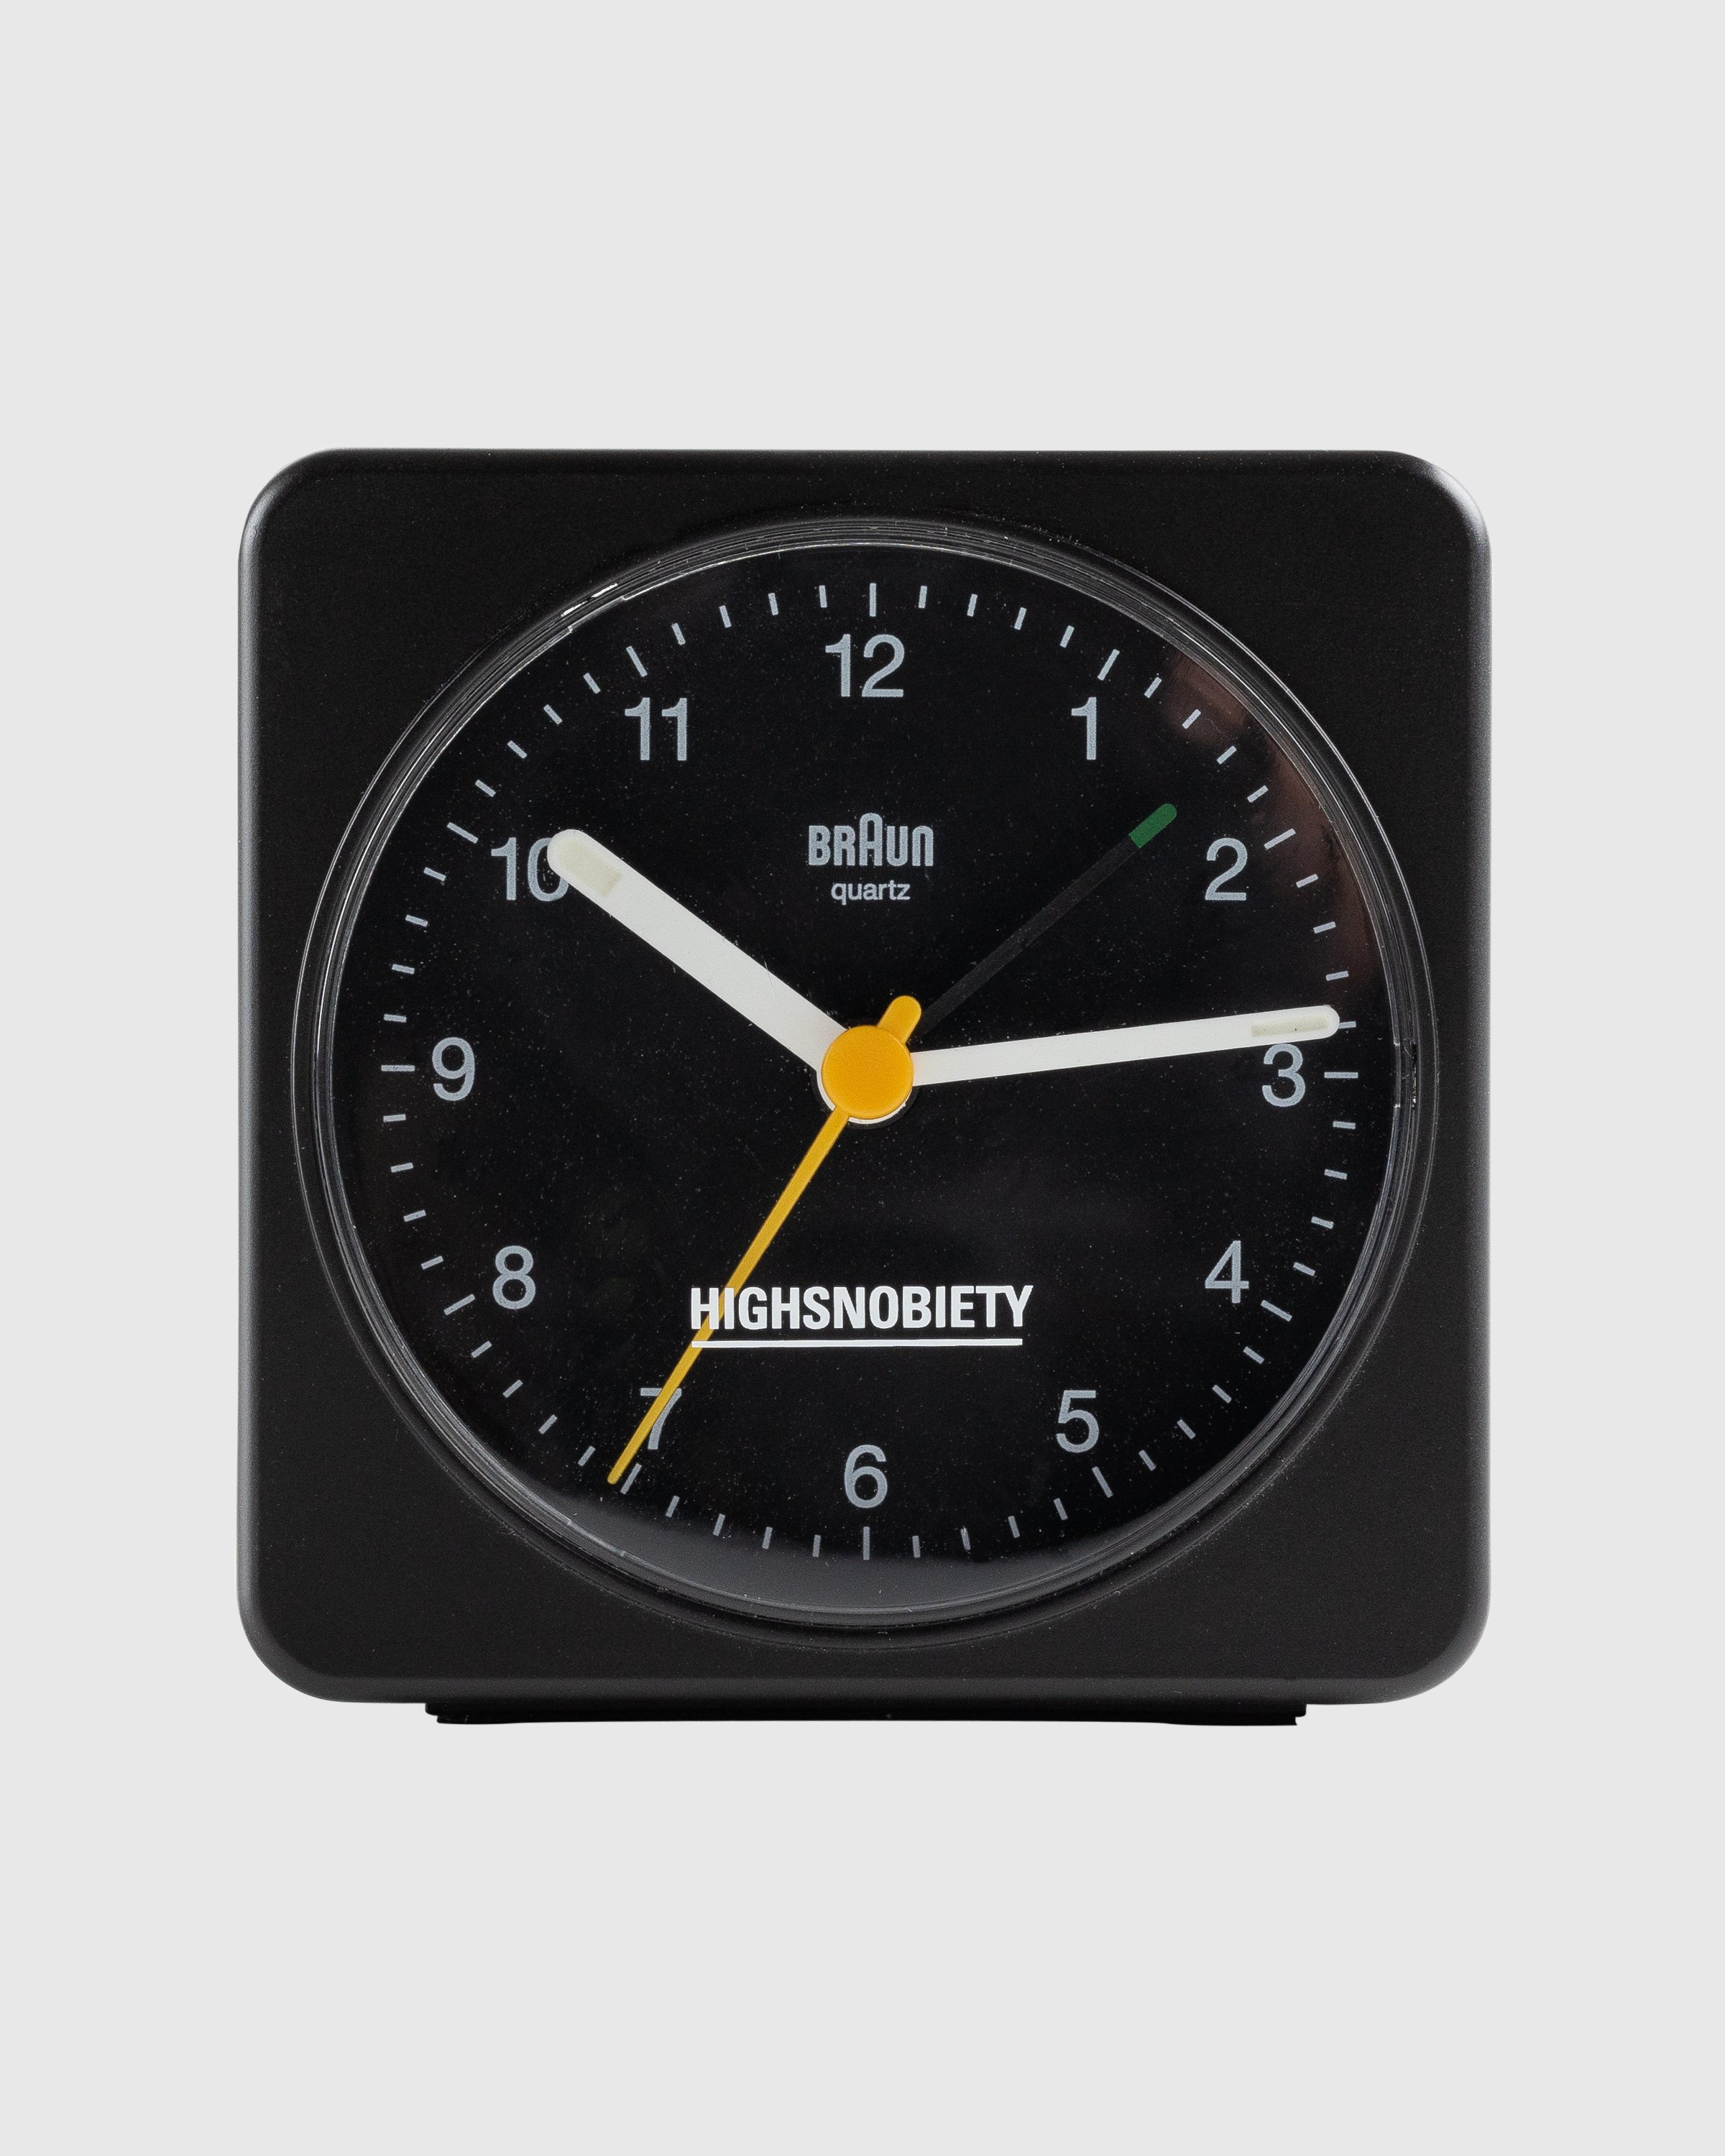 karbonade Bij elkaar passen Verlichten BRAUN x Highsnobiety – BC03 Classic Analogue Alarm Clock Black |  Highsnobiety Shop